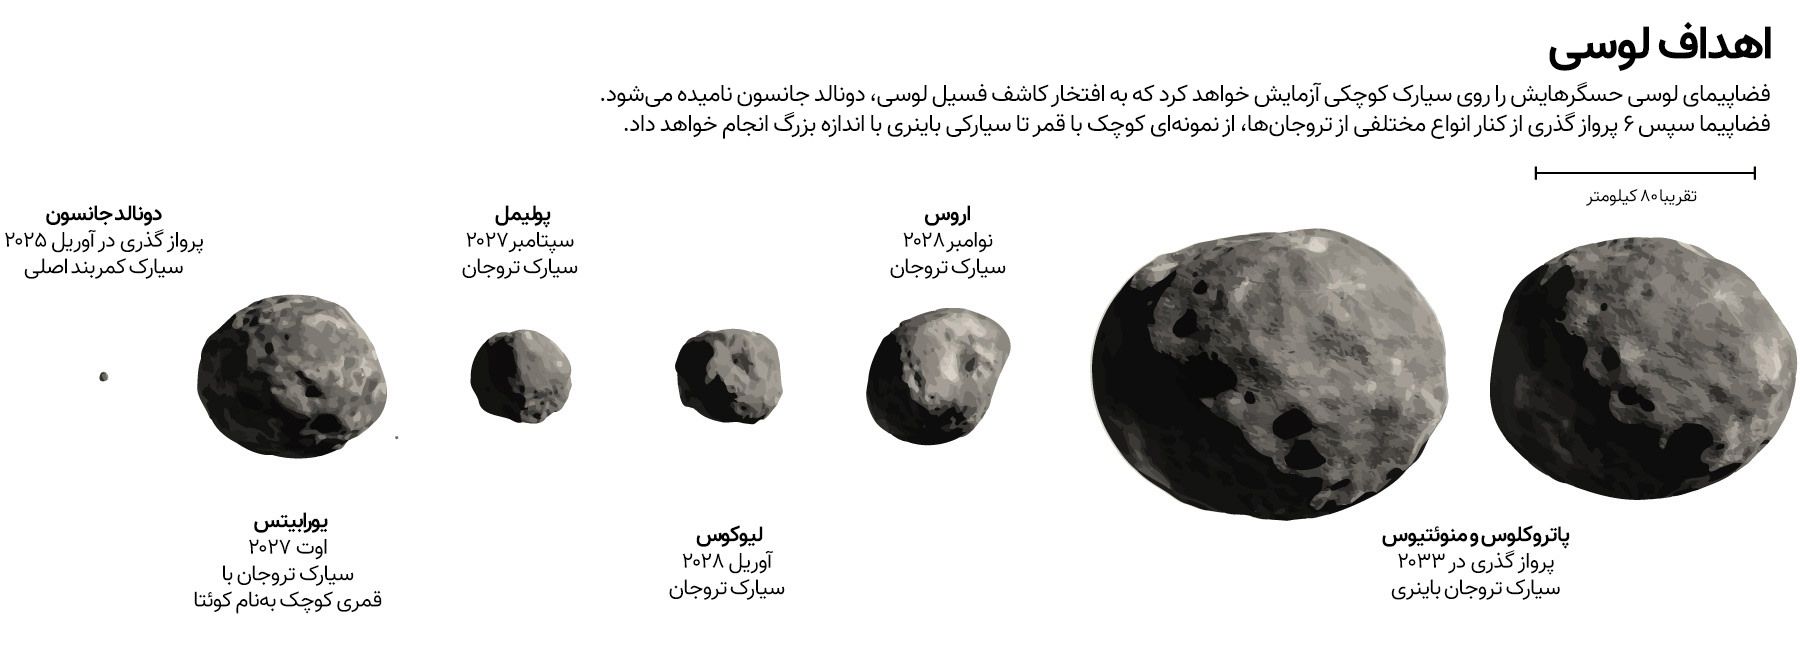 سیارک های تروا اسکن لوسی را هدف قرار می دهند